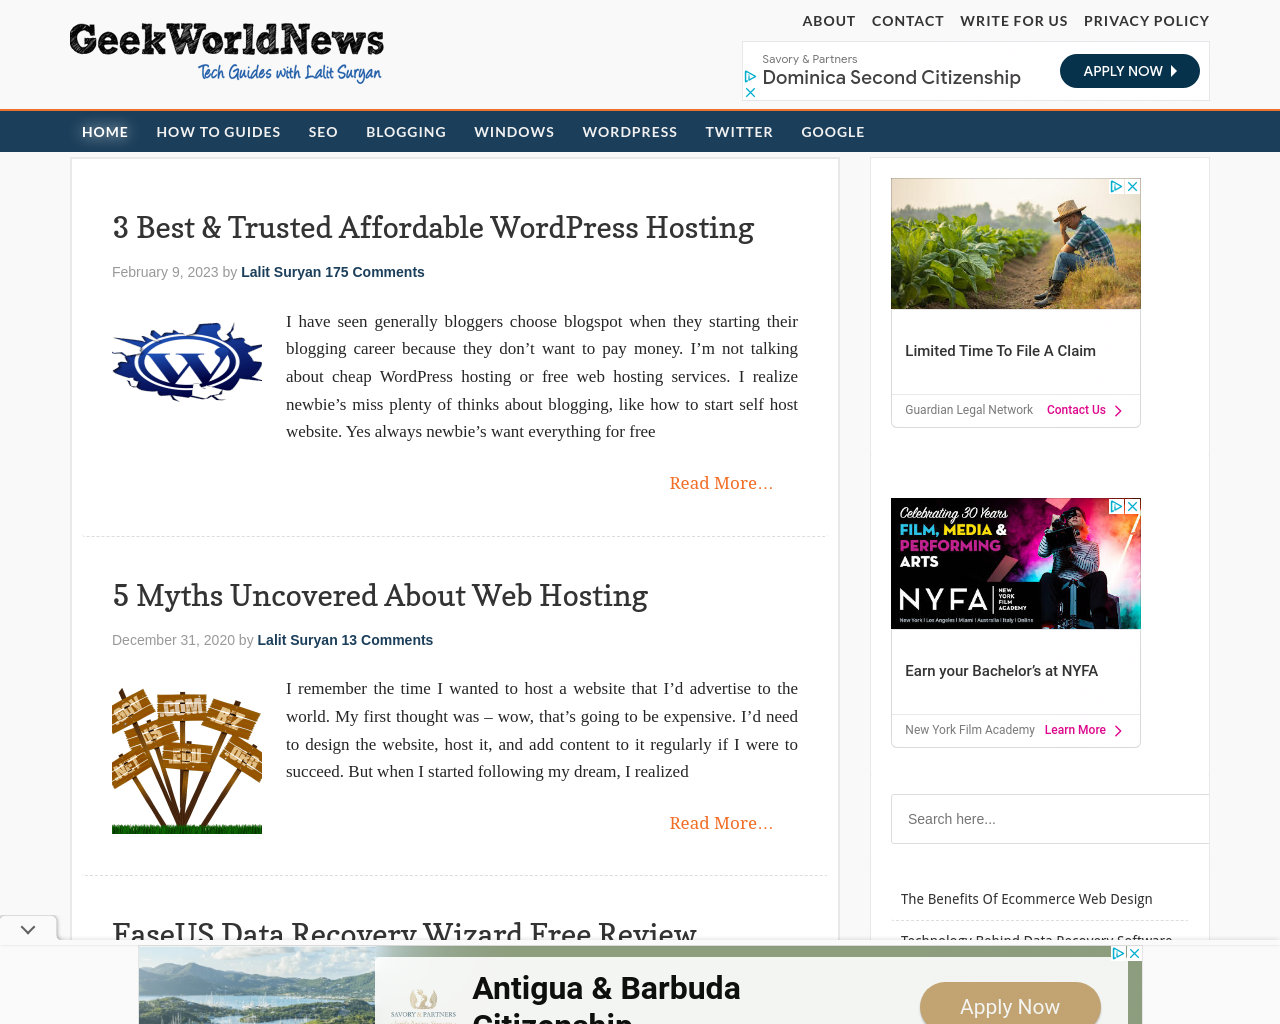 How to Blog: Geek World News